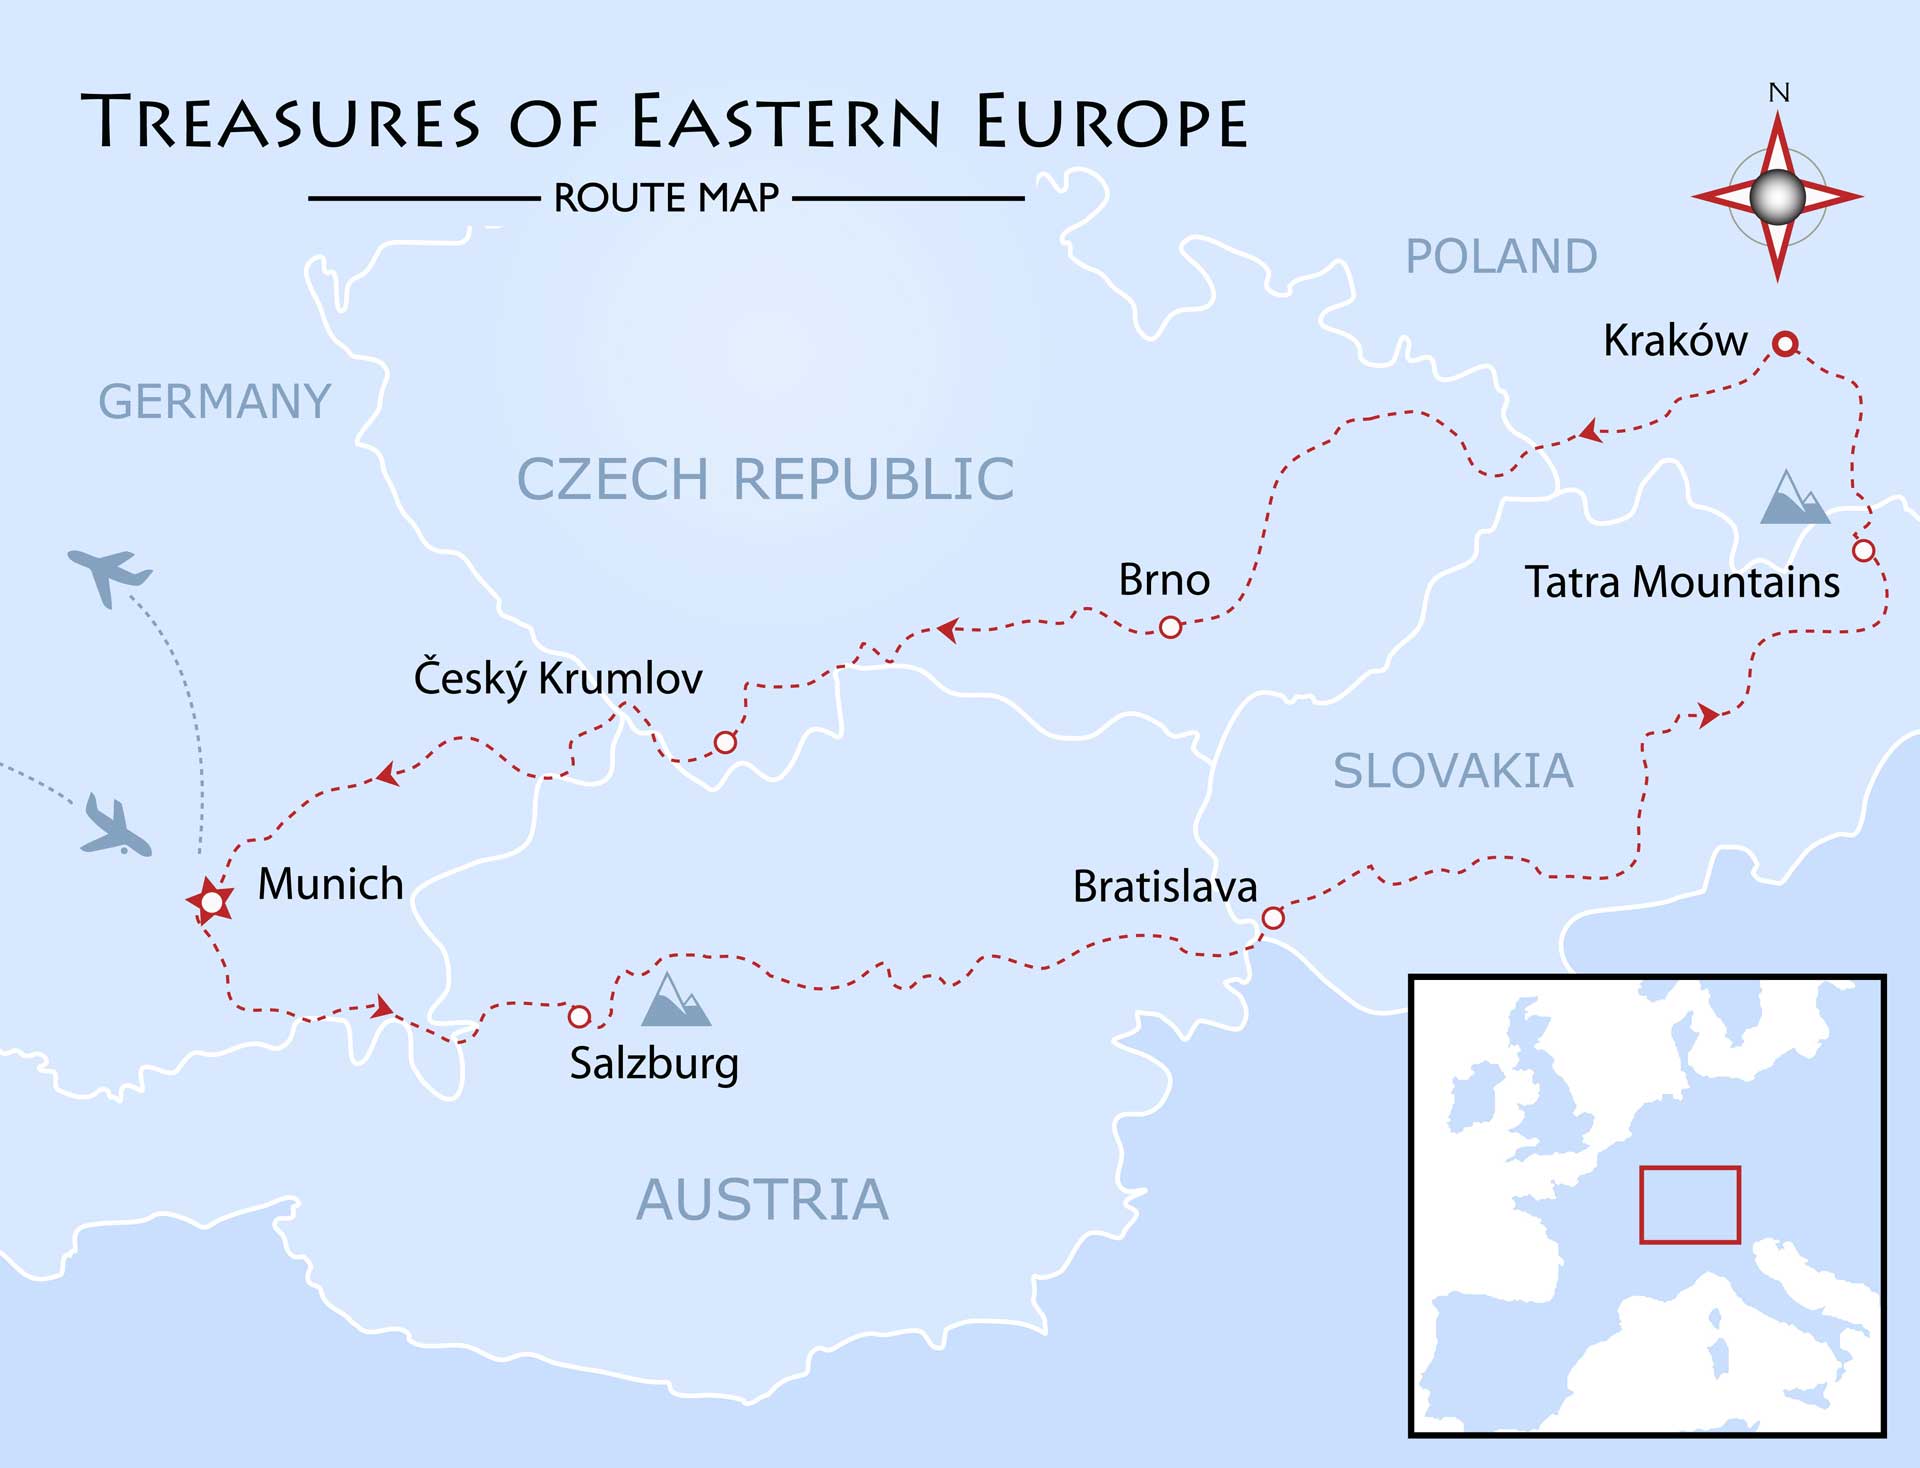 Treasures of Eastern Europe Map